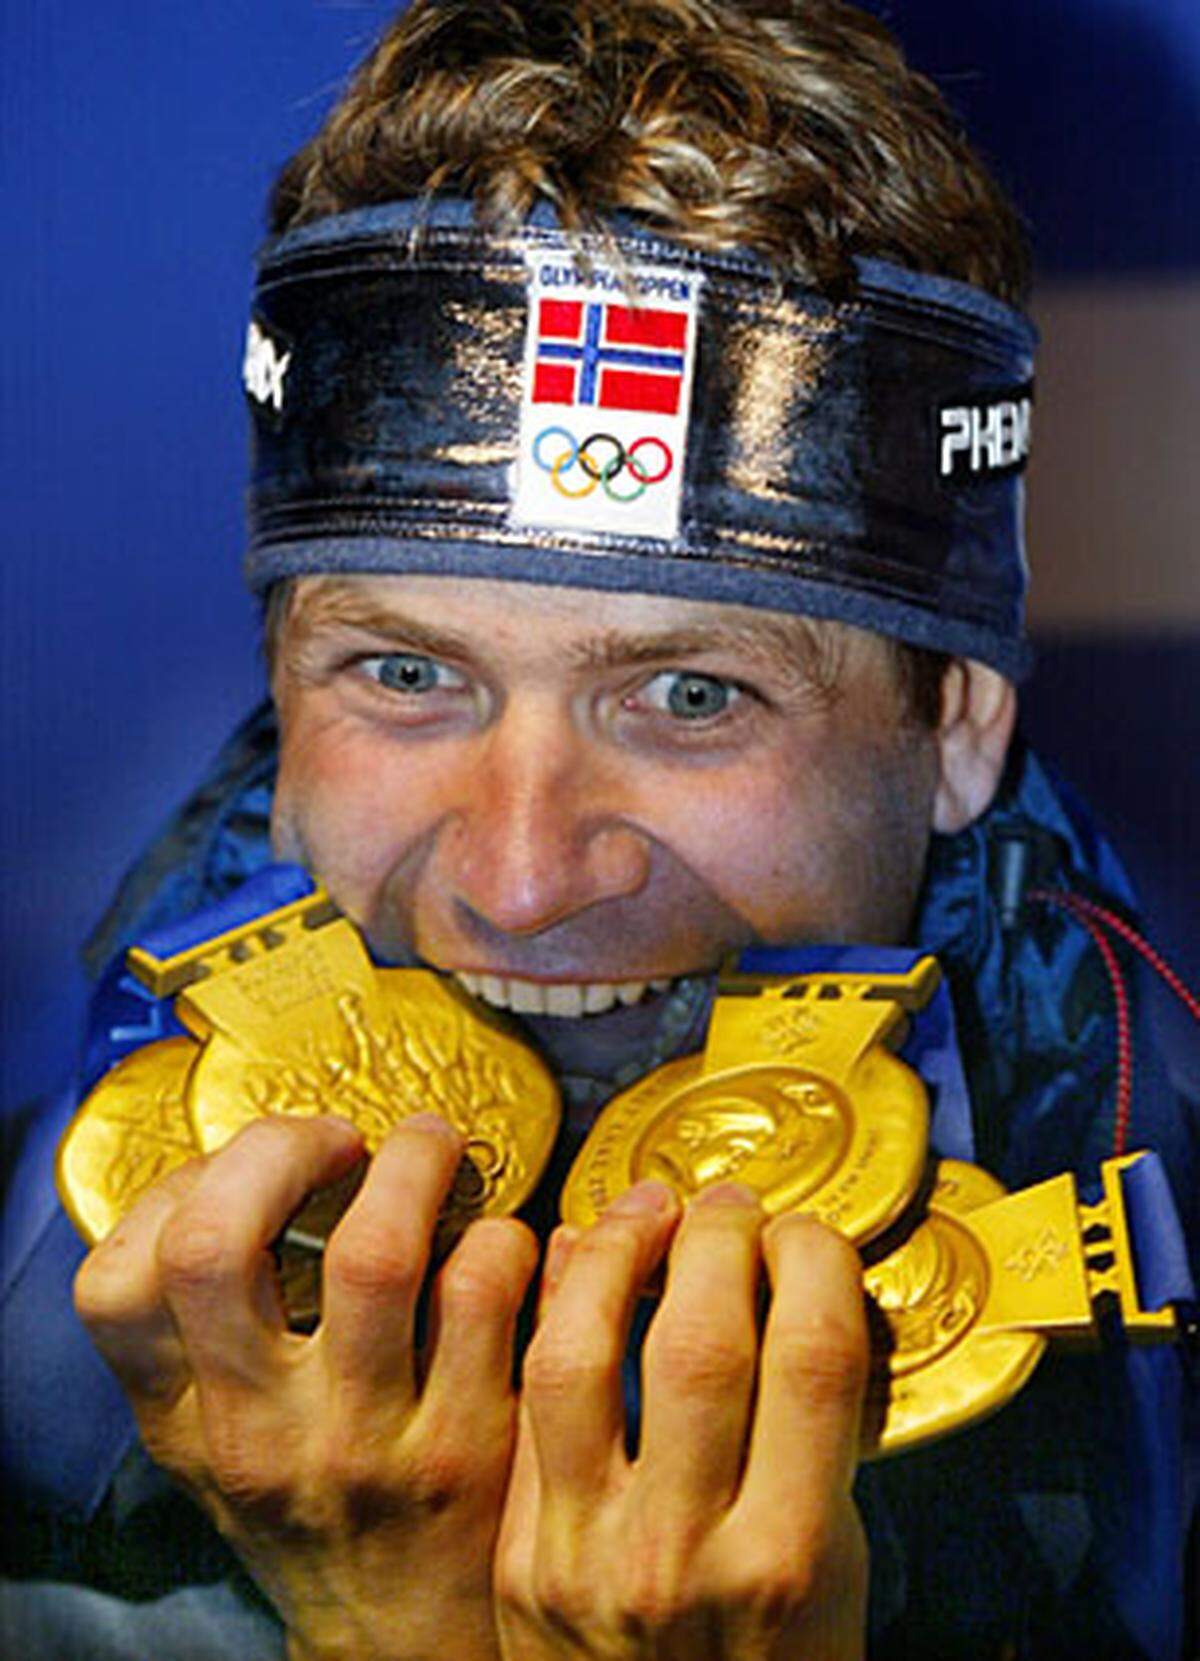 Nach einer kleinen "Durststrecke" (bei den WM 1999, 2000 und 2001 holt er "nur" dreimal Silber und viermal Bronze) geraten die Olympischen Spiele 2002 in Salt Lake City zu einer Machtdemonstration des Norwegers: Björndalen gewinnt in allen drei Einzelrennen (10 km, 20 km, Verfolgung) und mit der Mannschaft Gold.